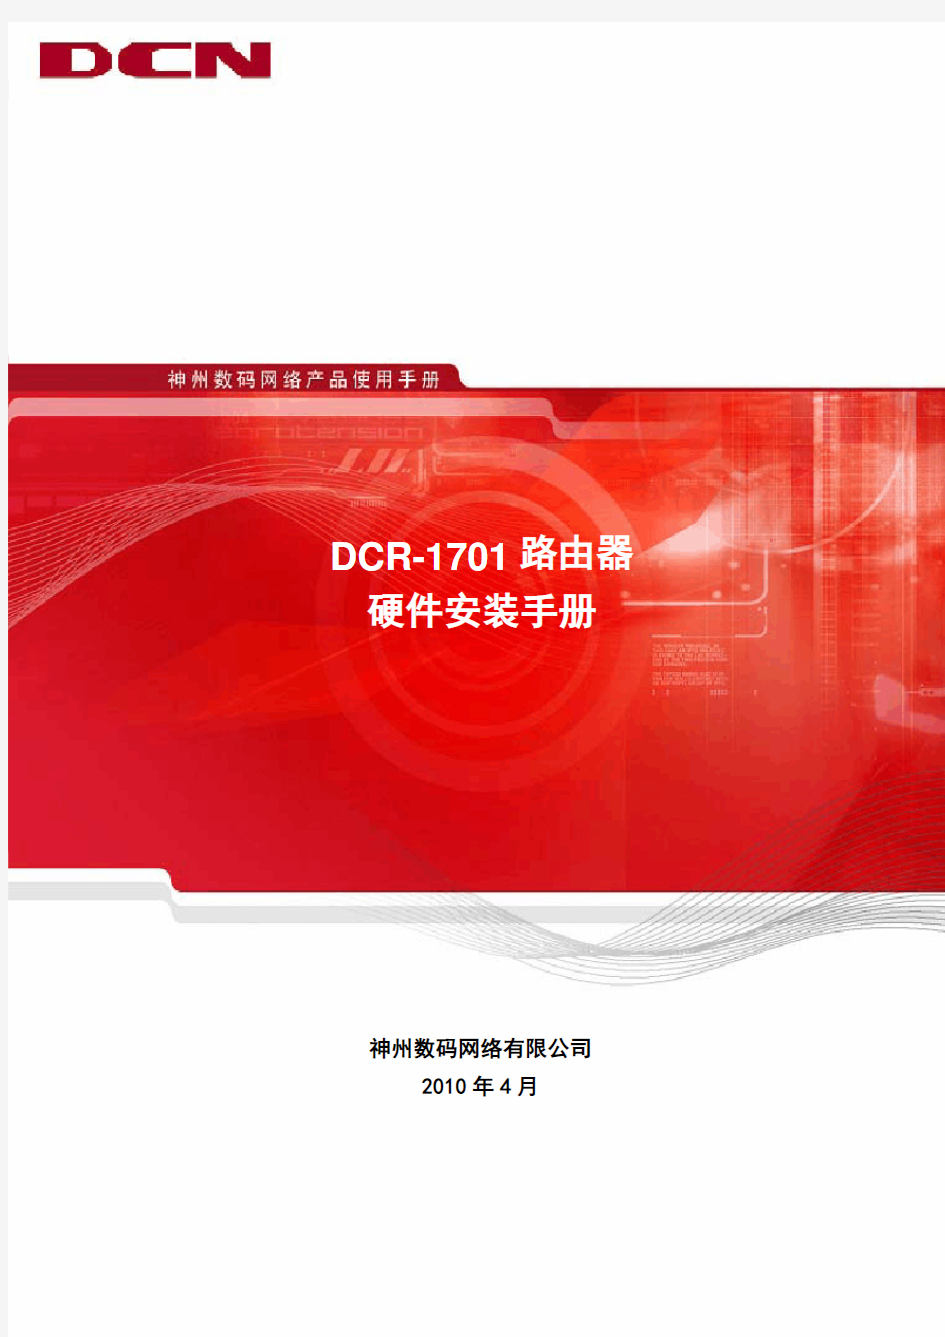 DCR-1701路由器硬件安装手册